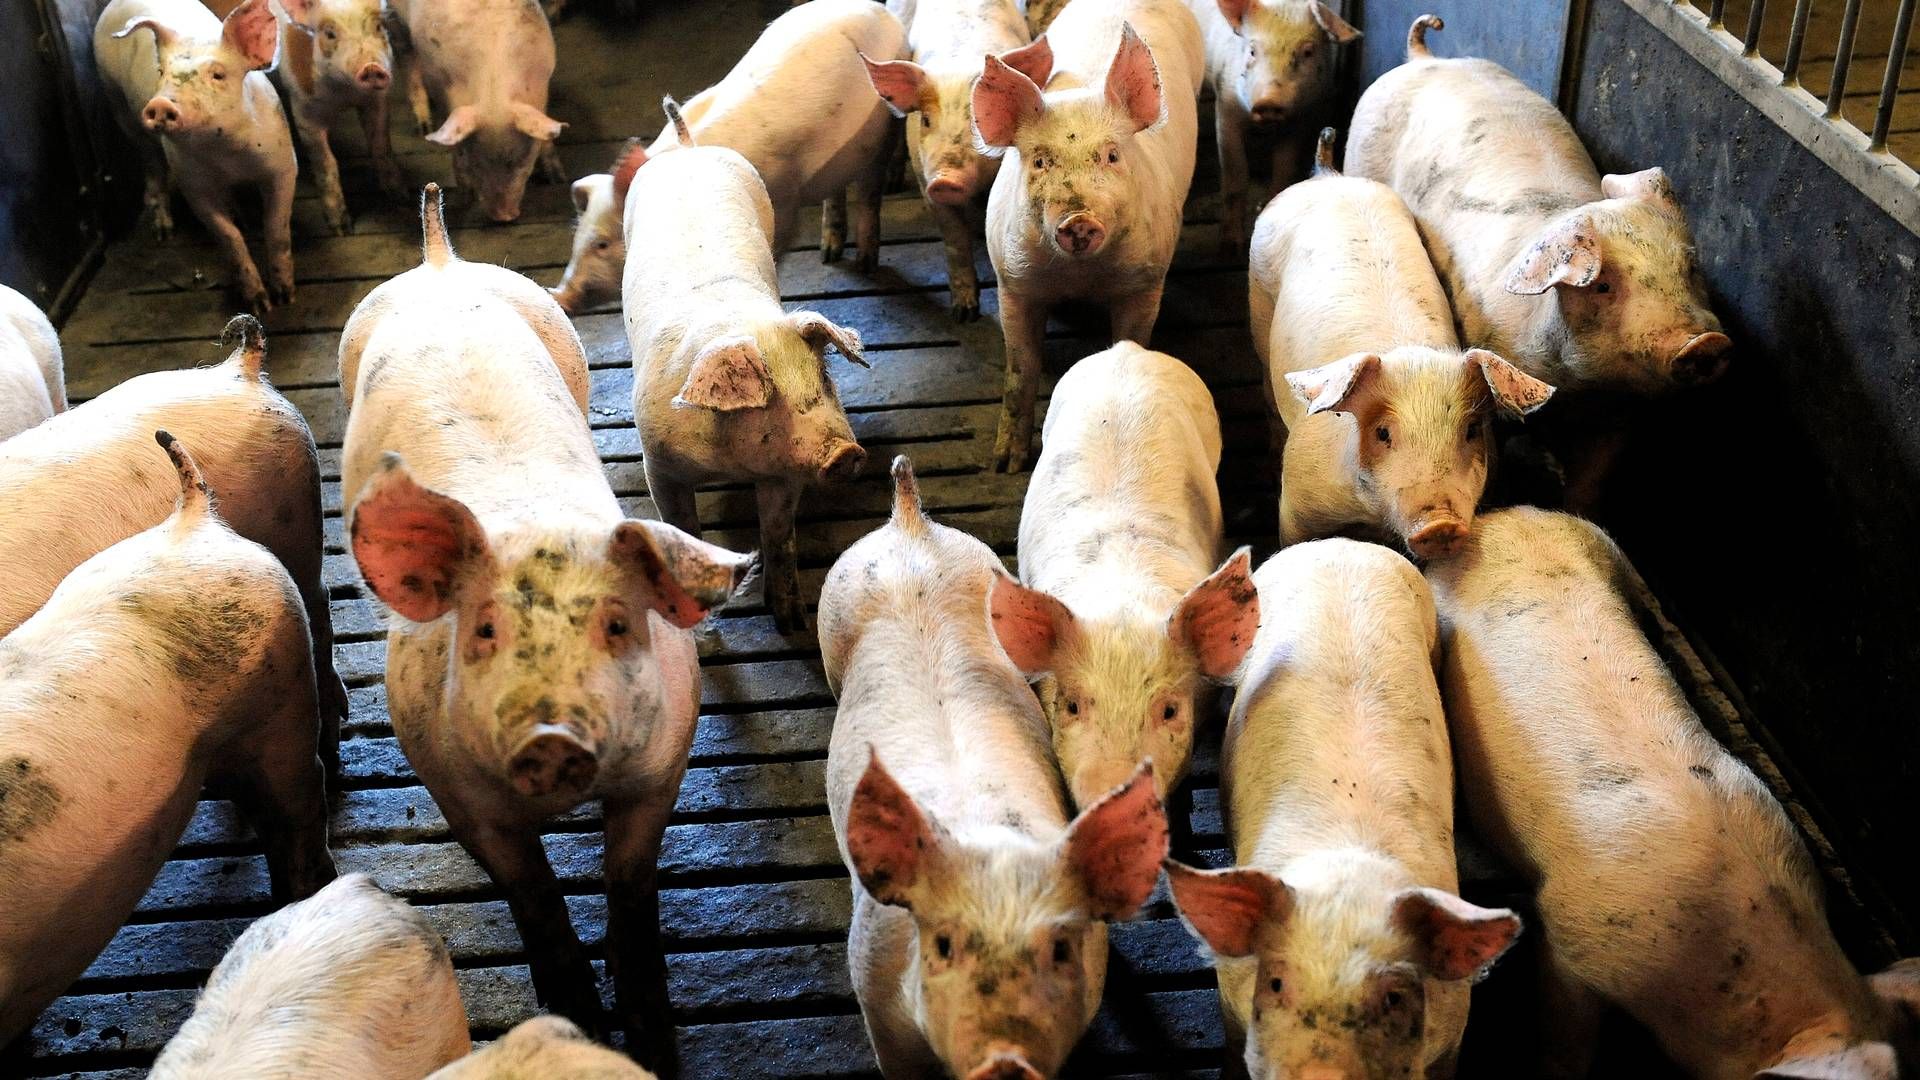 EU's landbrugsministre mødes mandag i Bruxelles, hvor blandt andet håndteringen af svinepest er på dagsordenen. | Foto: Carsten Andreasen